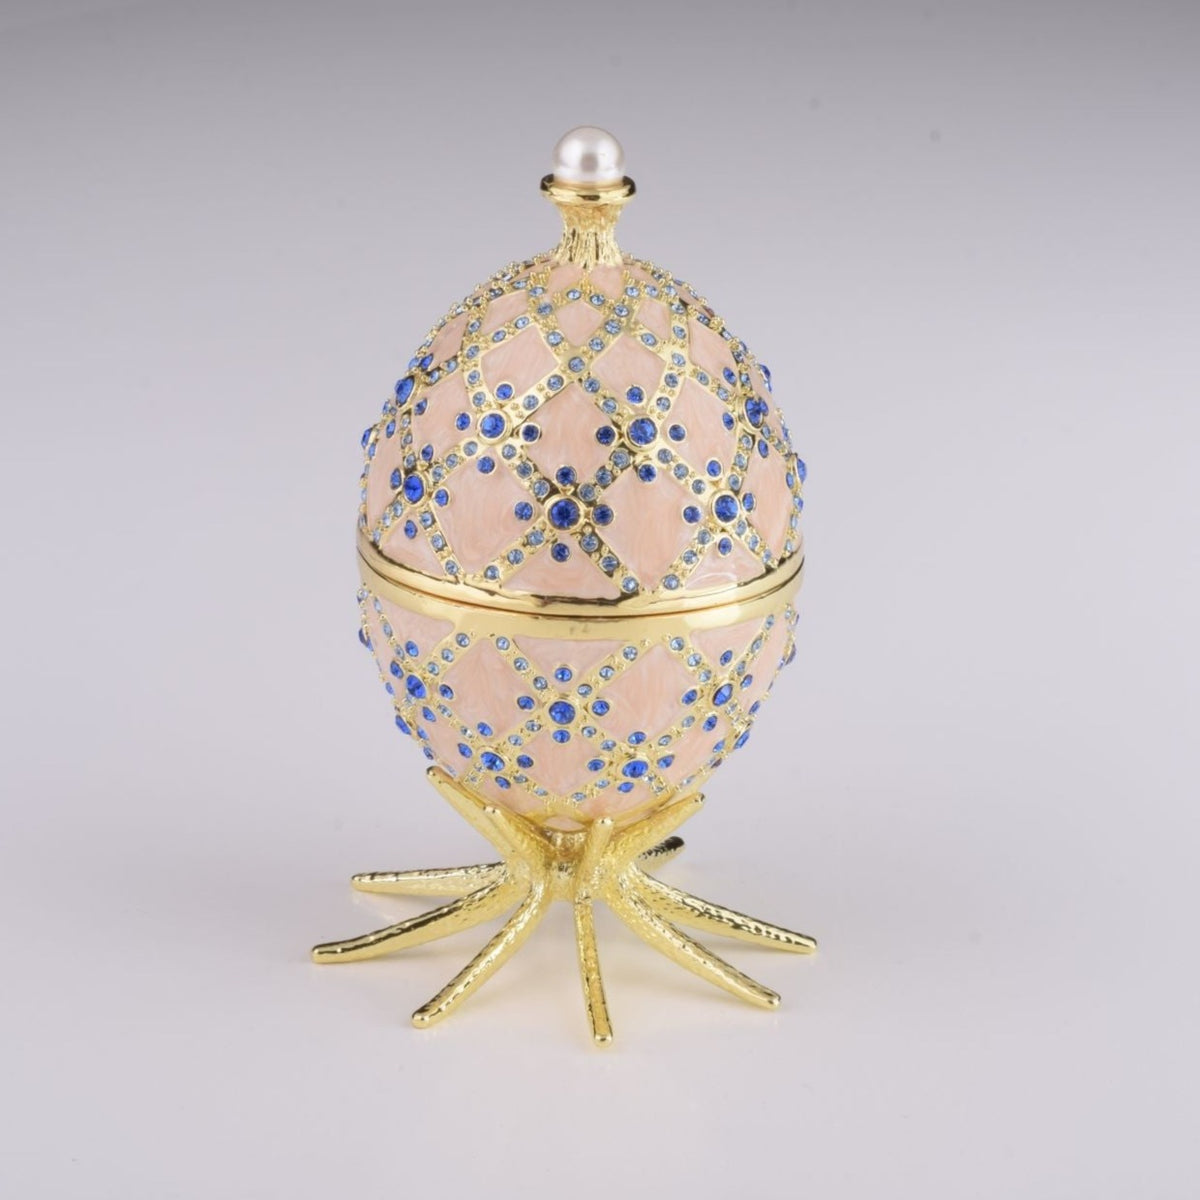 Œuf de Fabergé rose avec horloge à l'intérieur